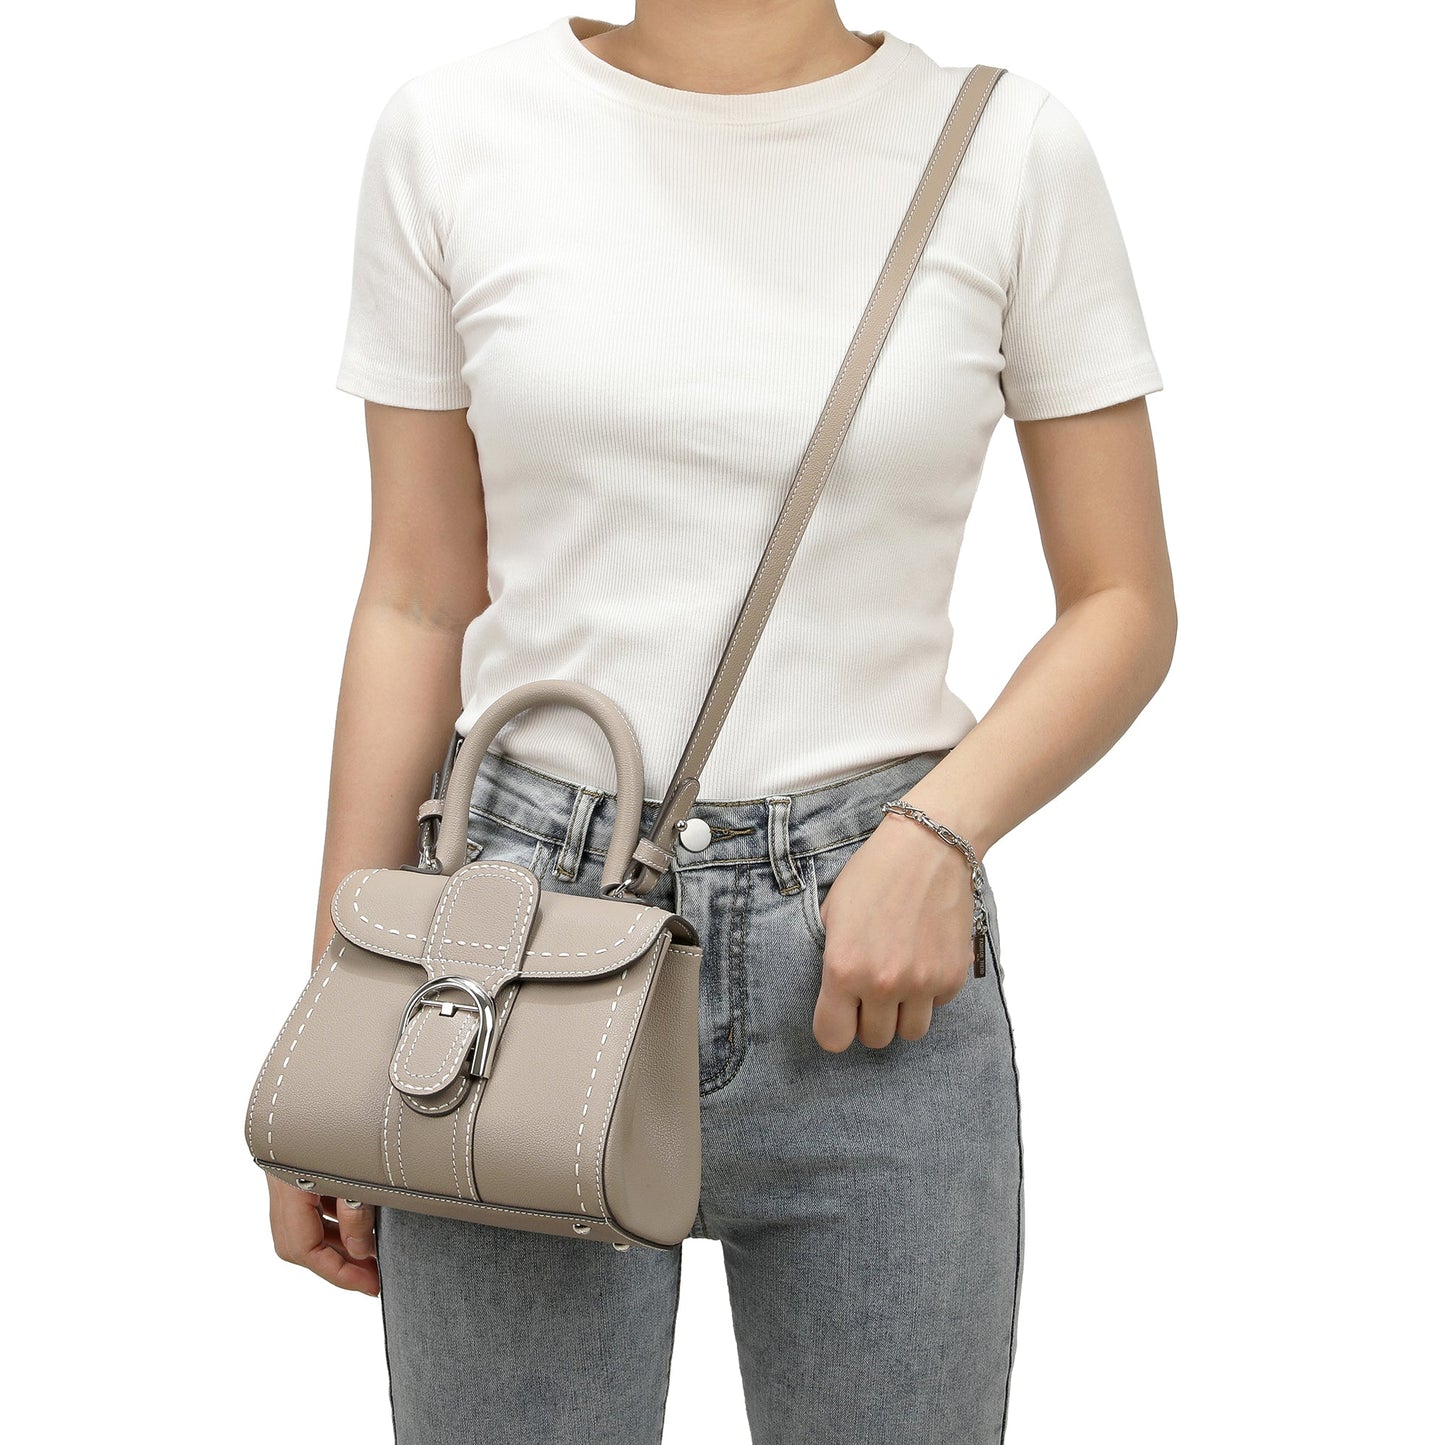 Full-Grain Leather Satchel/Shoulder Bag